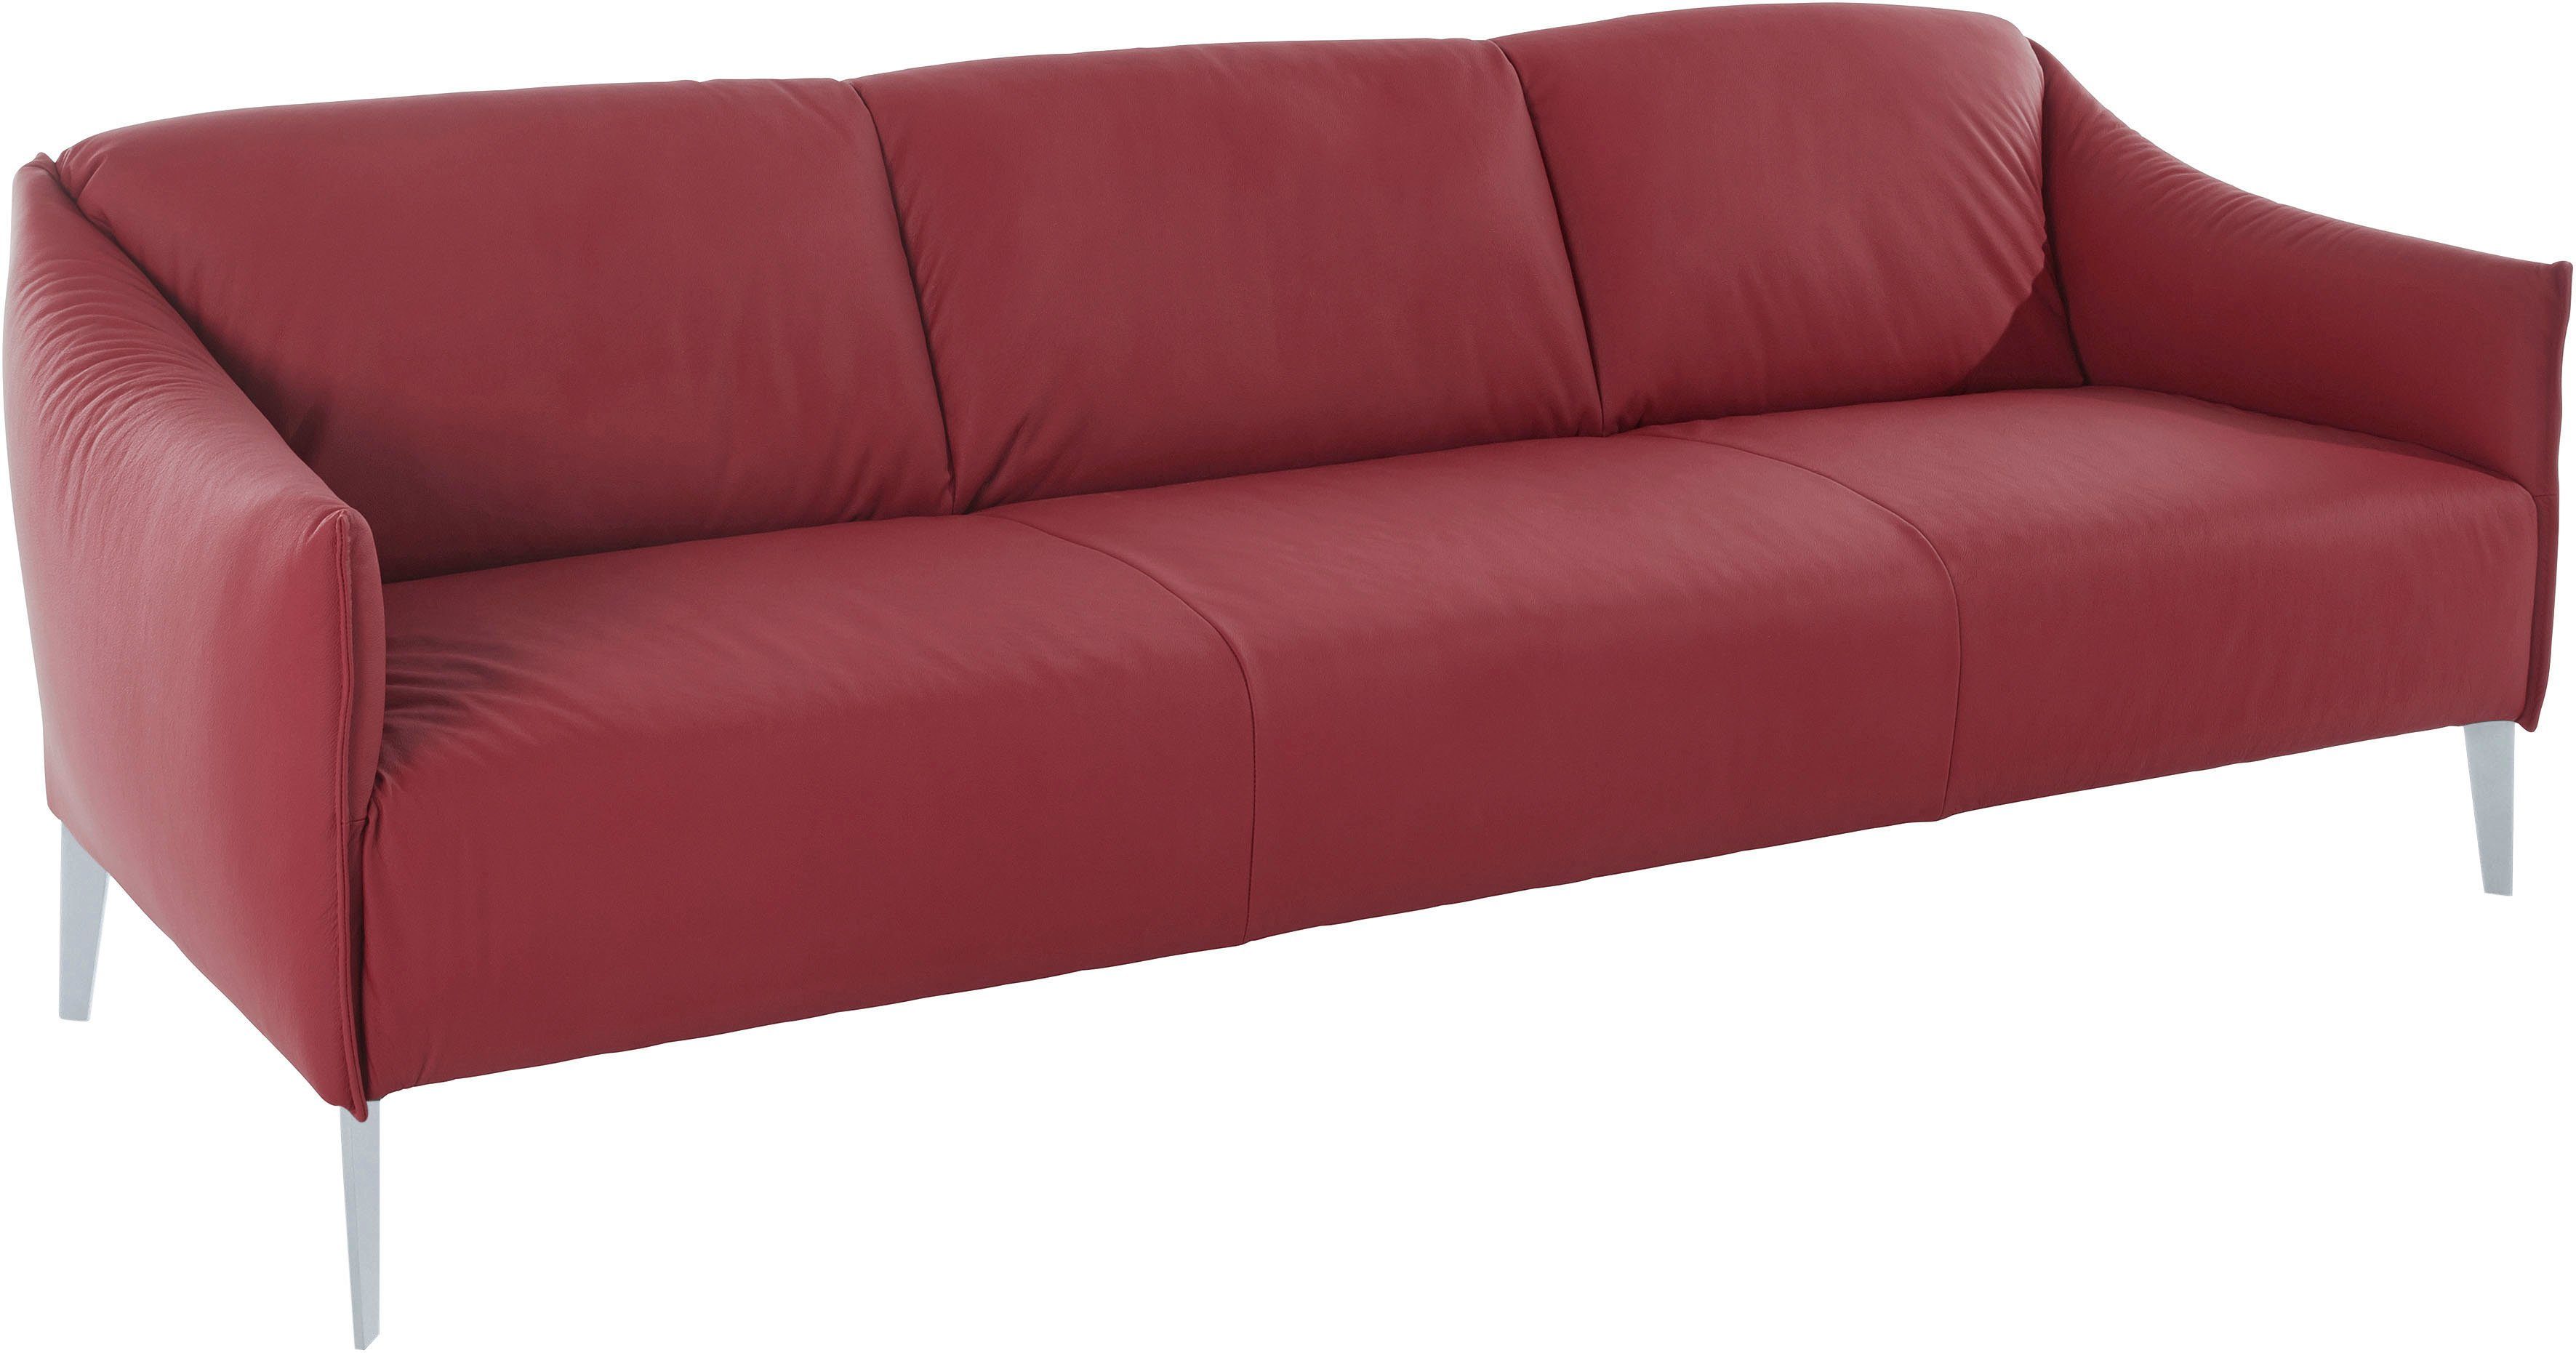 W.SCHILLIG Breite cm 224 3-Sitzer red in ruby Z59 sally, matt, Silber Metall-Winkelfüßen mit